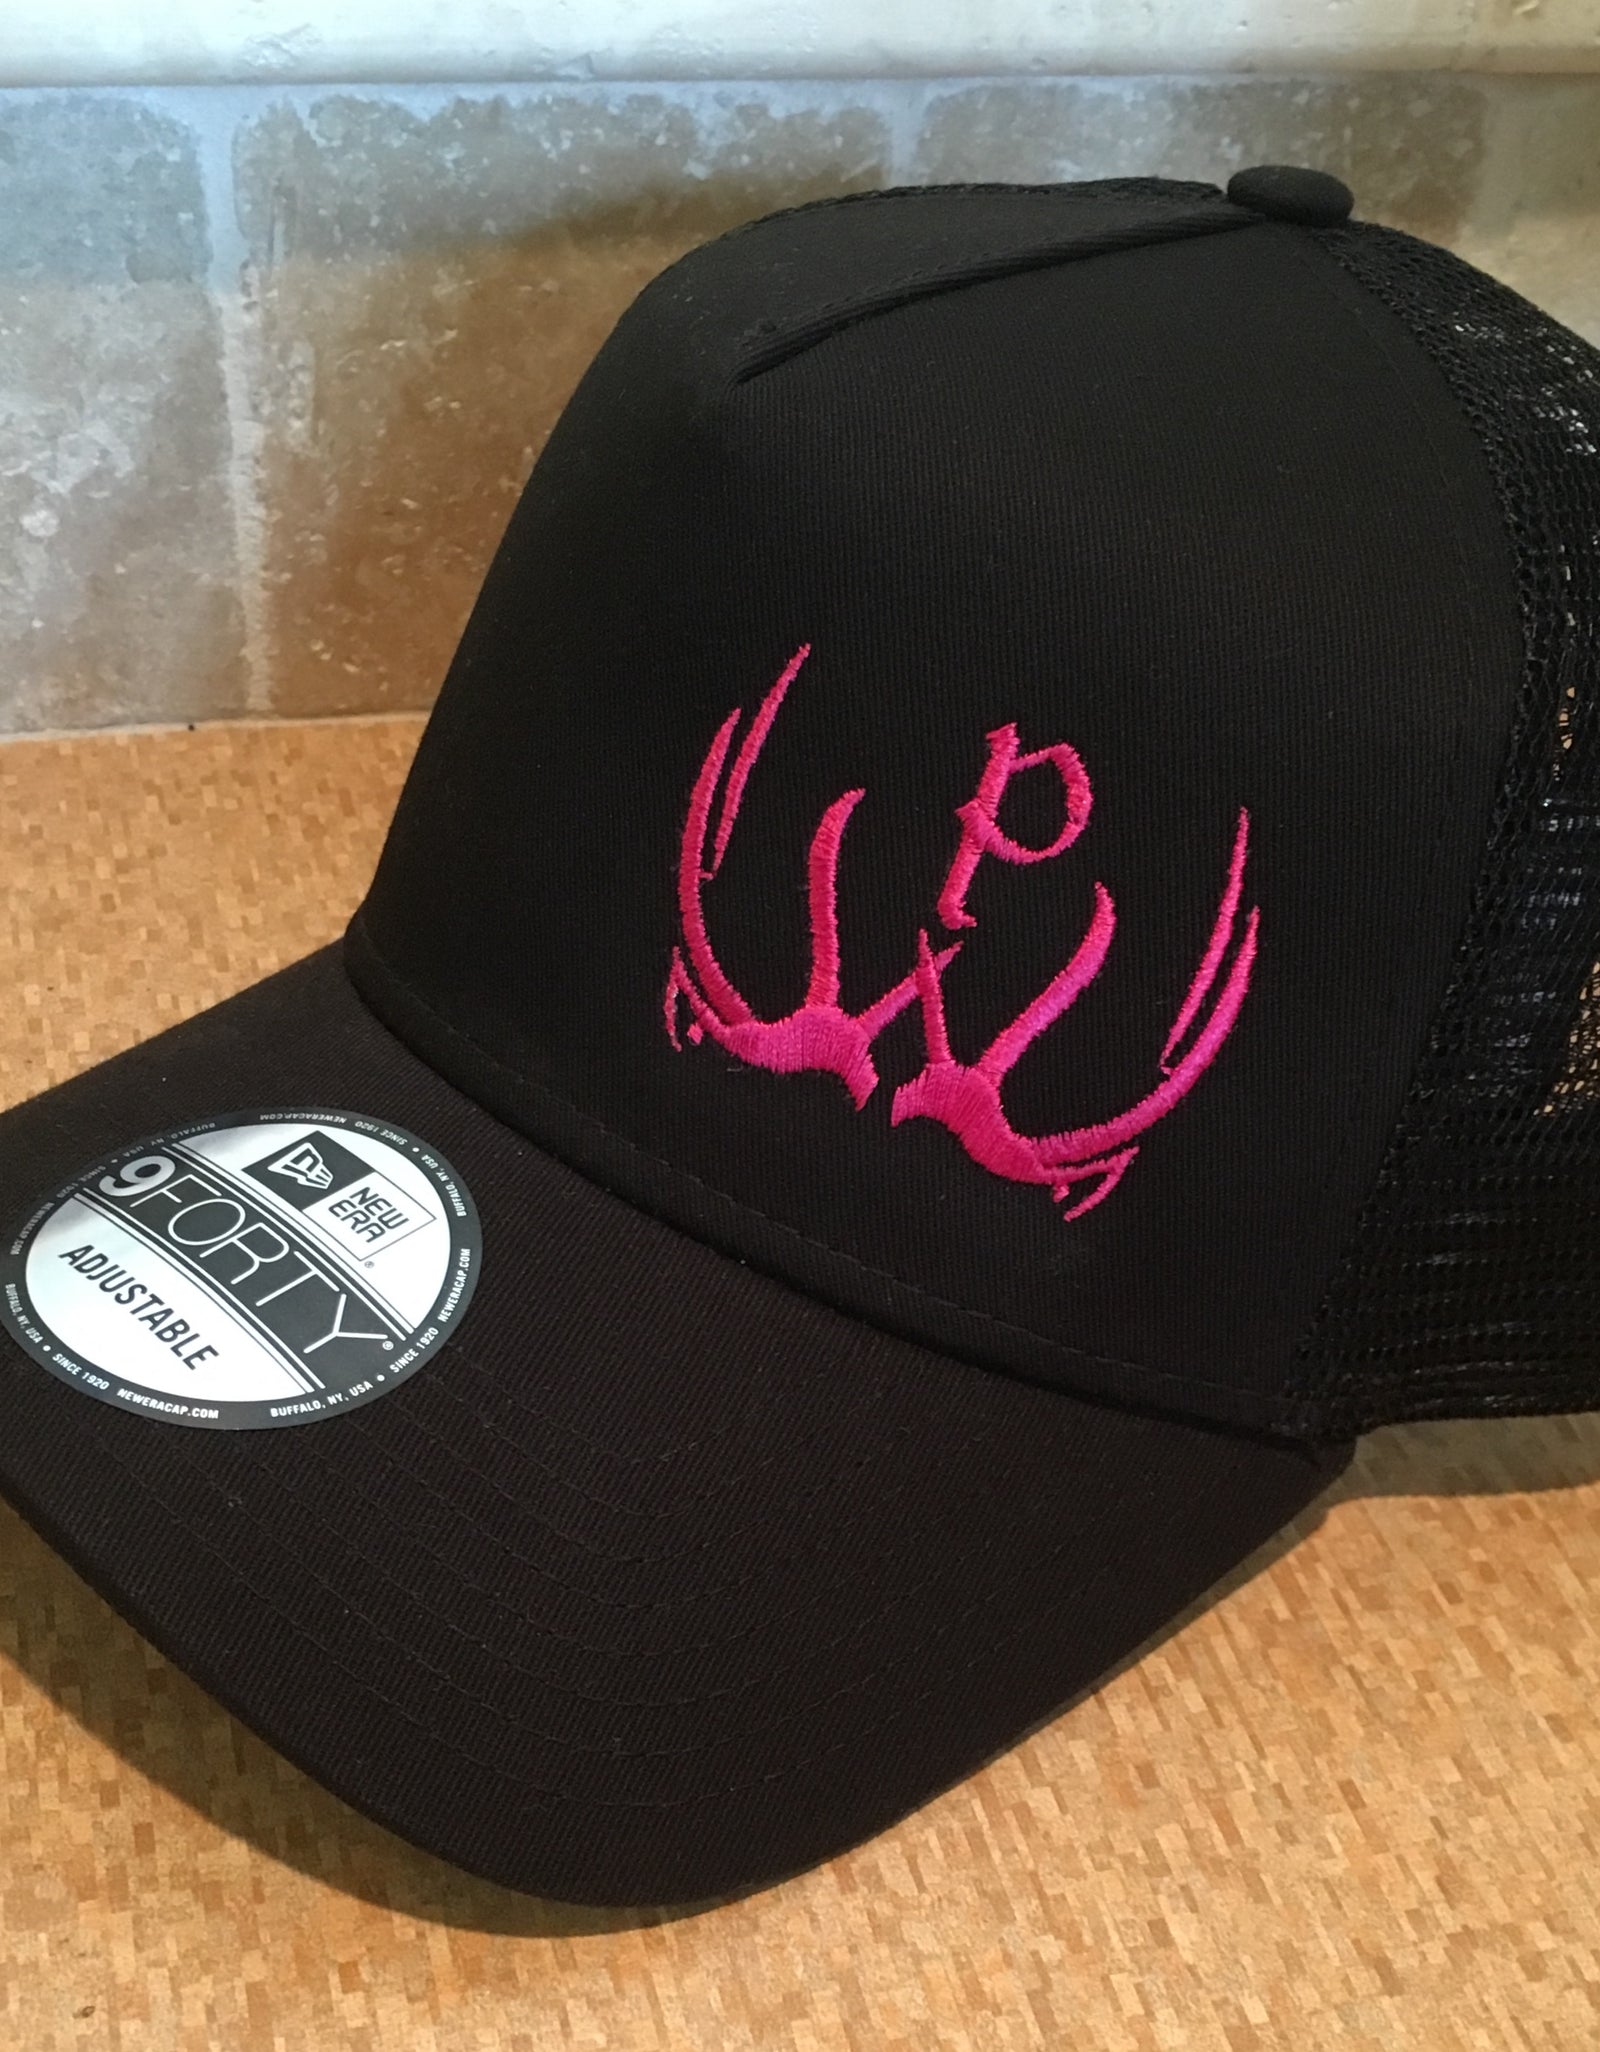 New Era Pursue The Wild Logo Hat - Black/Black & Pink